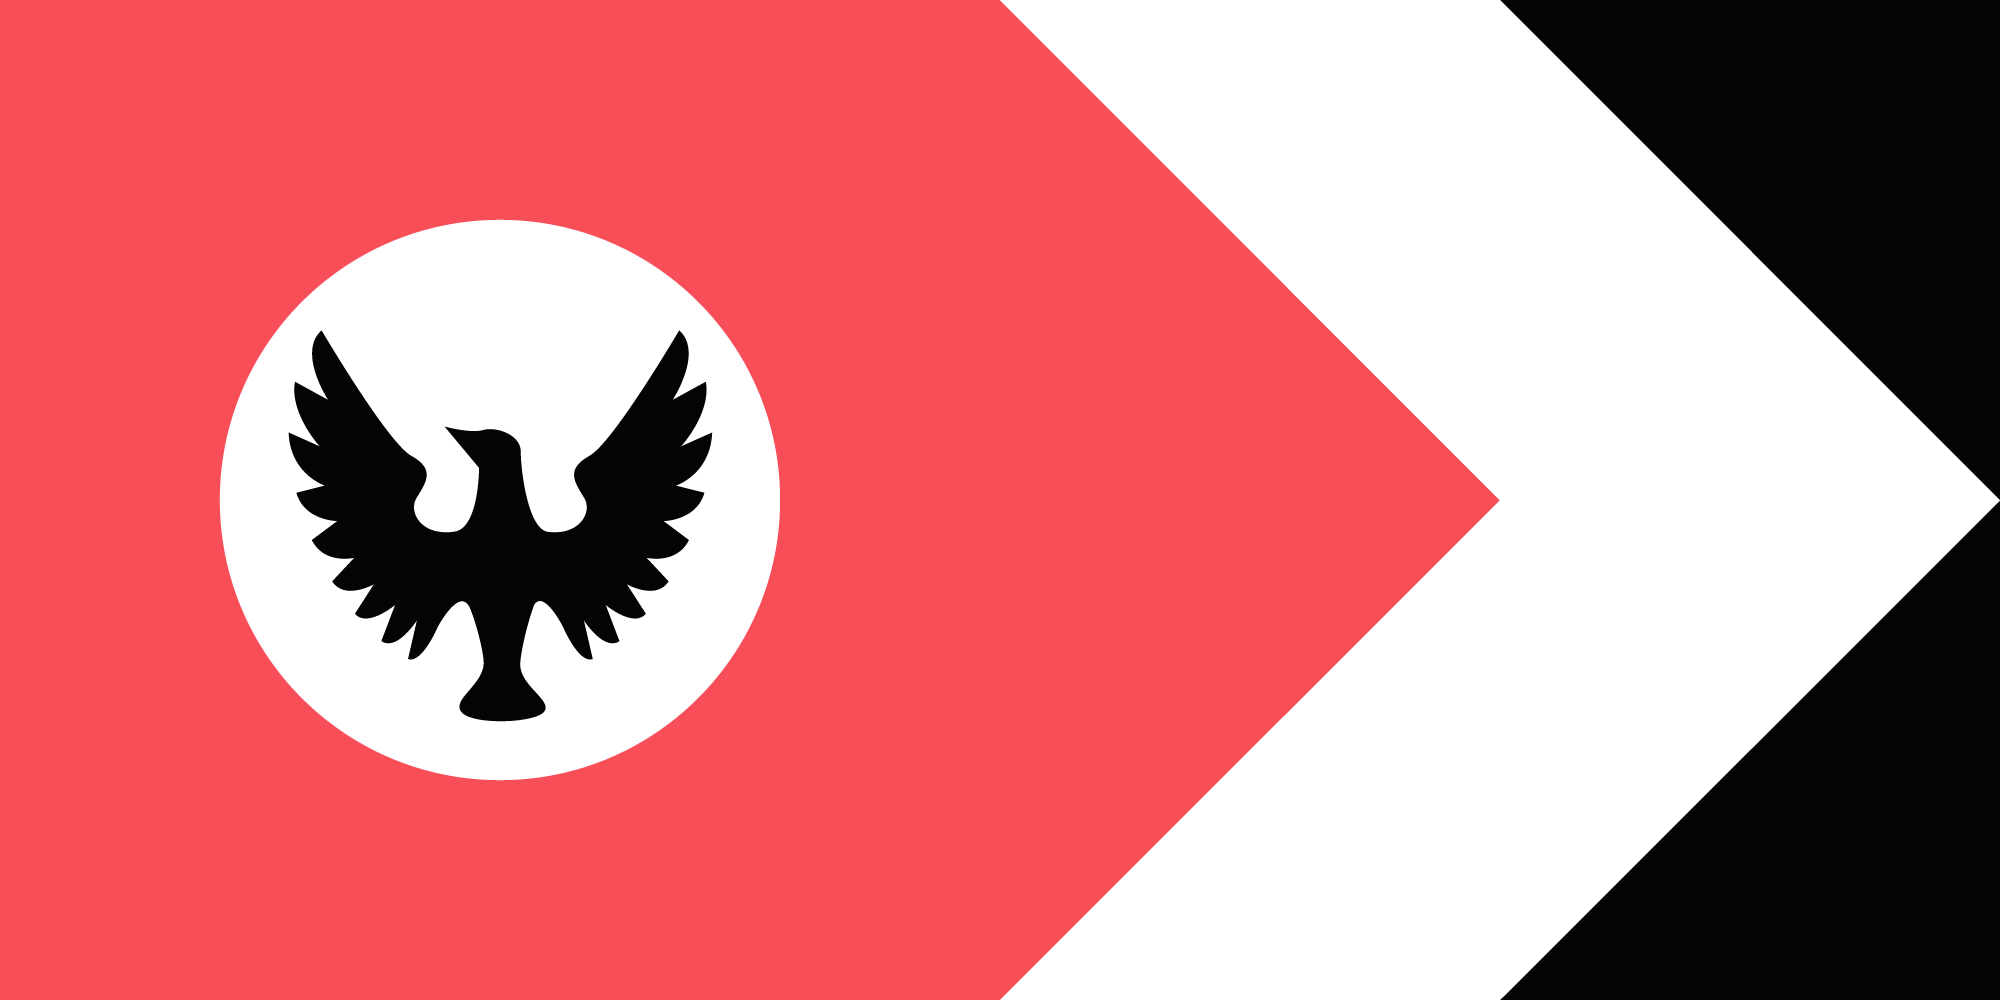 A state flag proposal for SA